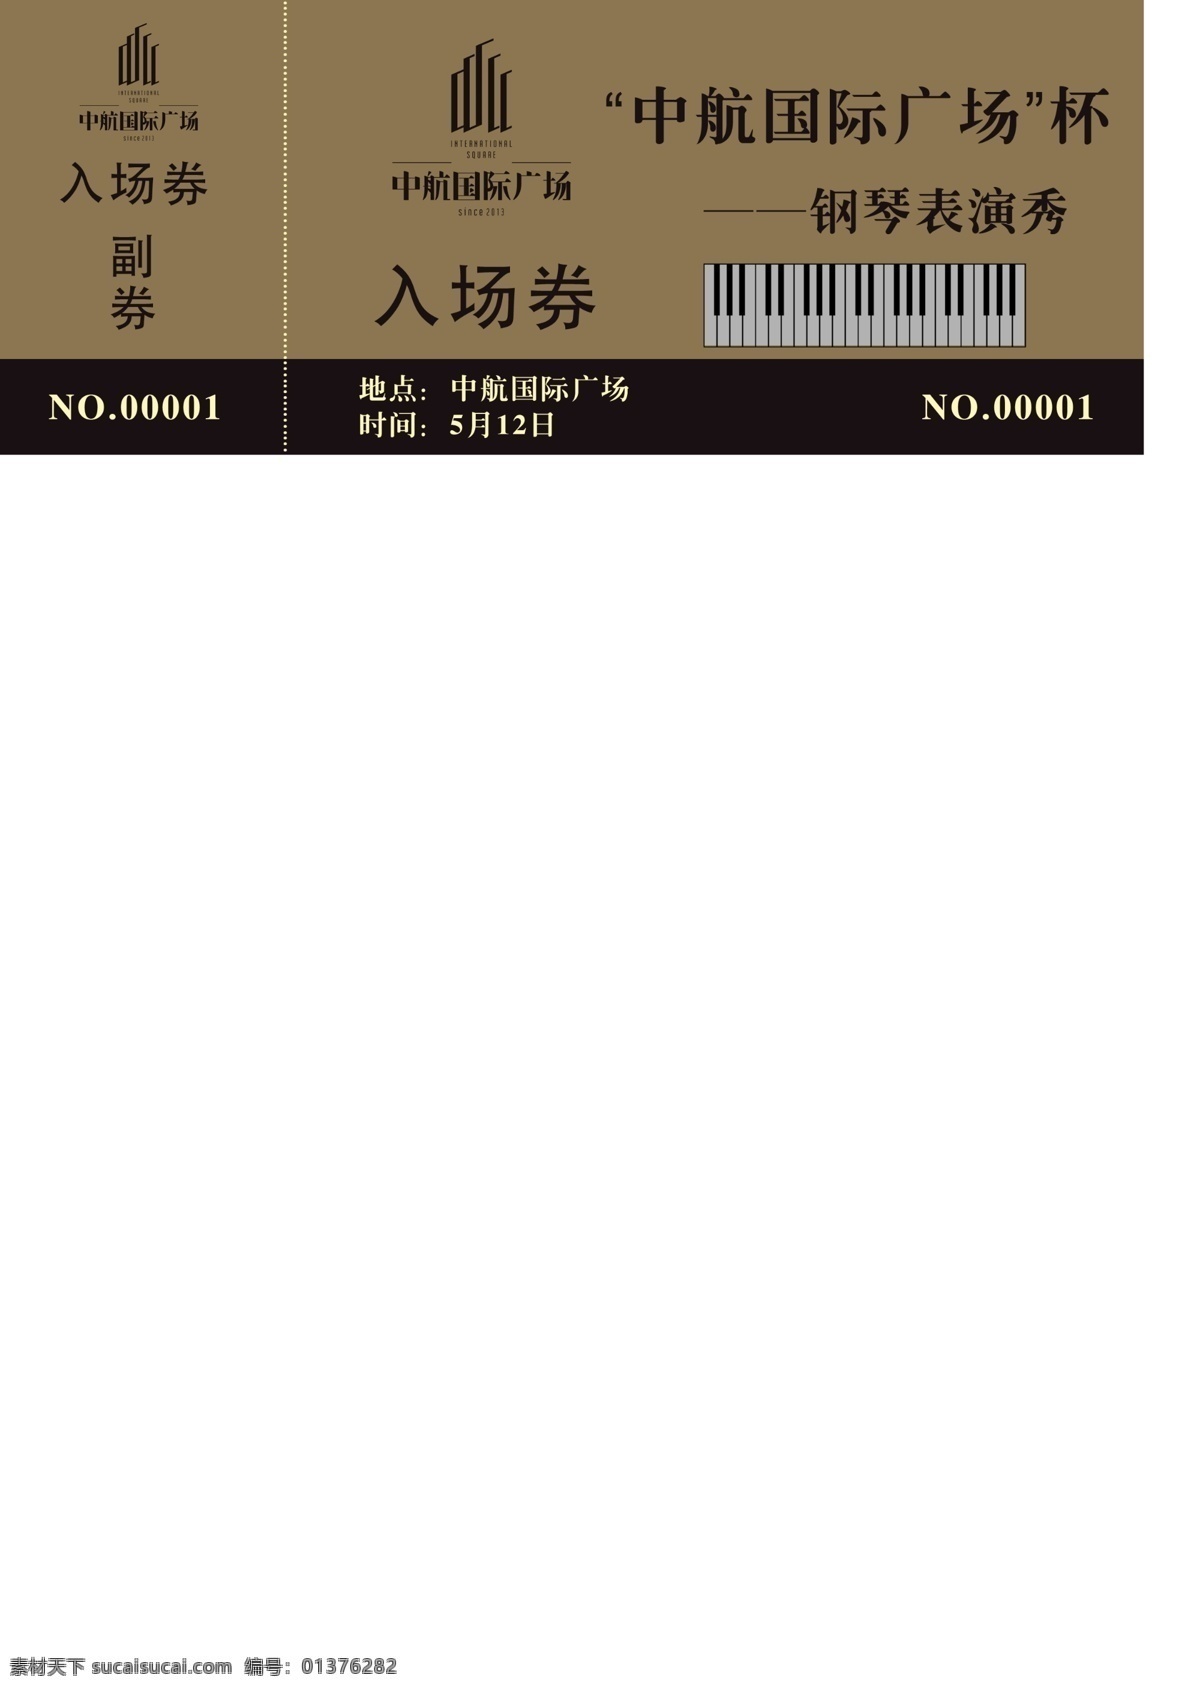 编号 抽奖 钢琴 广告设计模板 其他模版 入场券 源文件 比赛 模板下载 钢琴秀 psd源文件